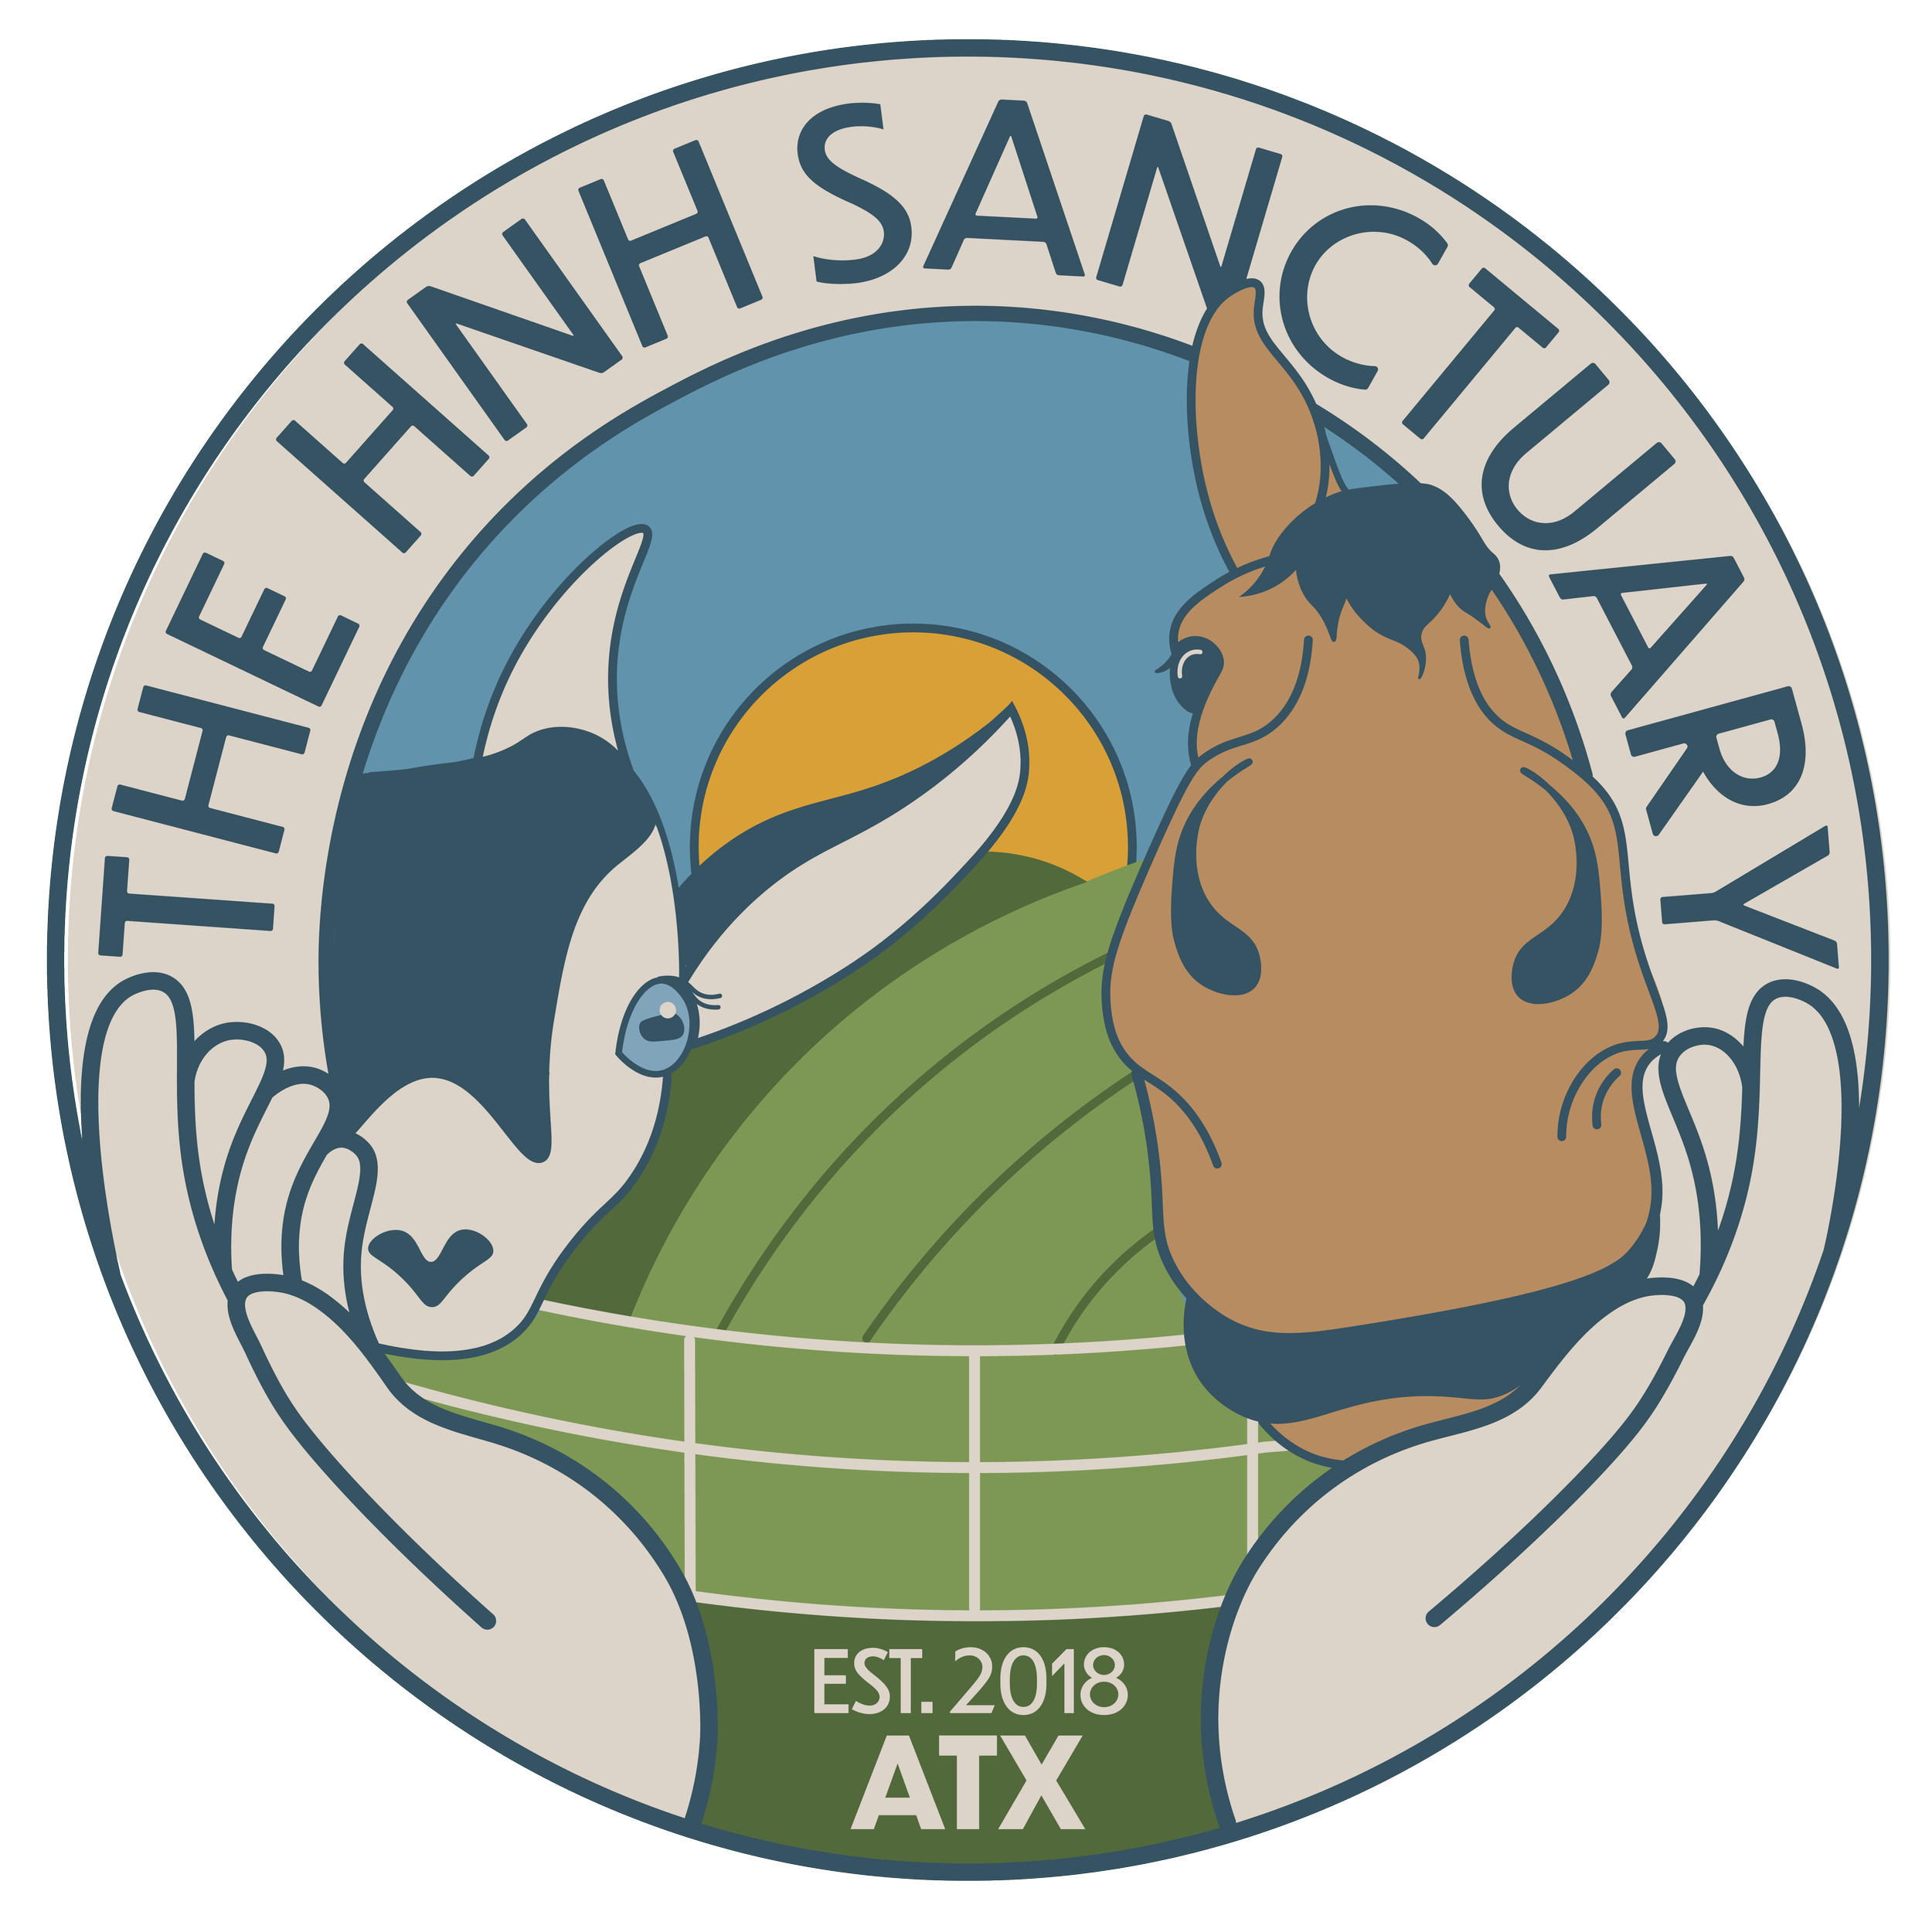 THE HNH SANCTUARY